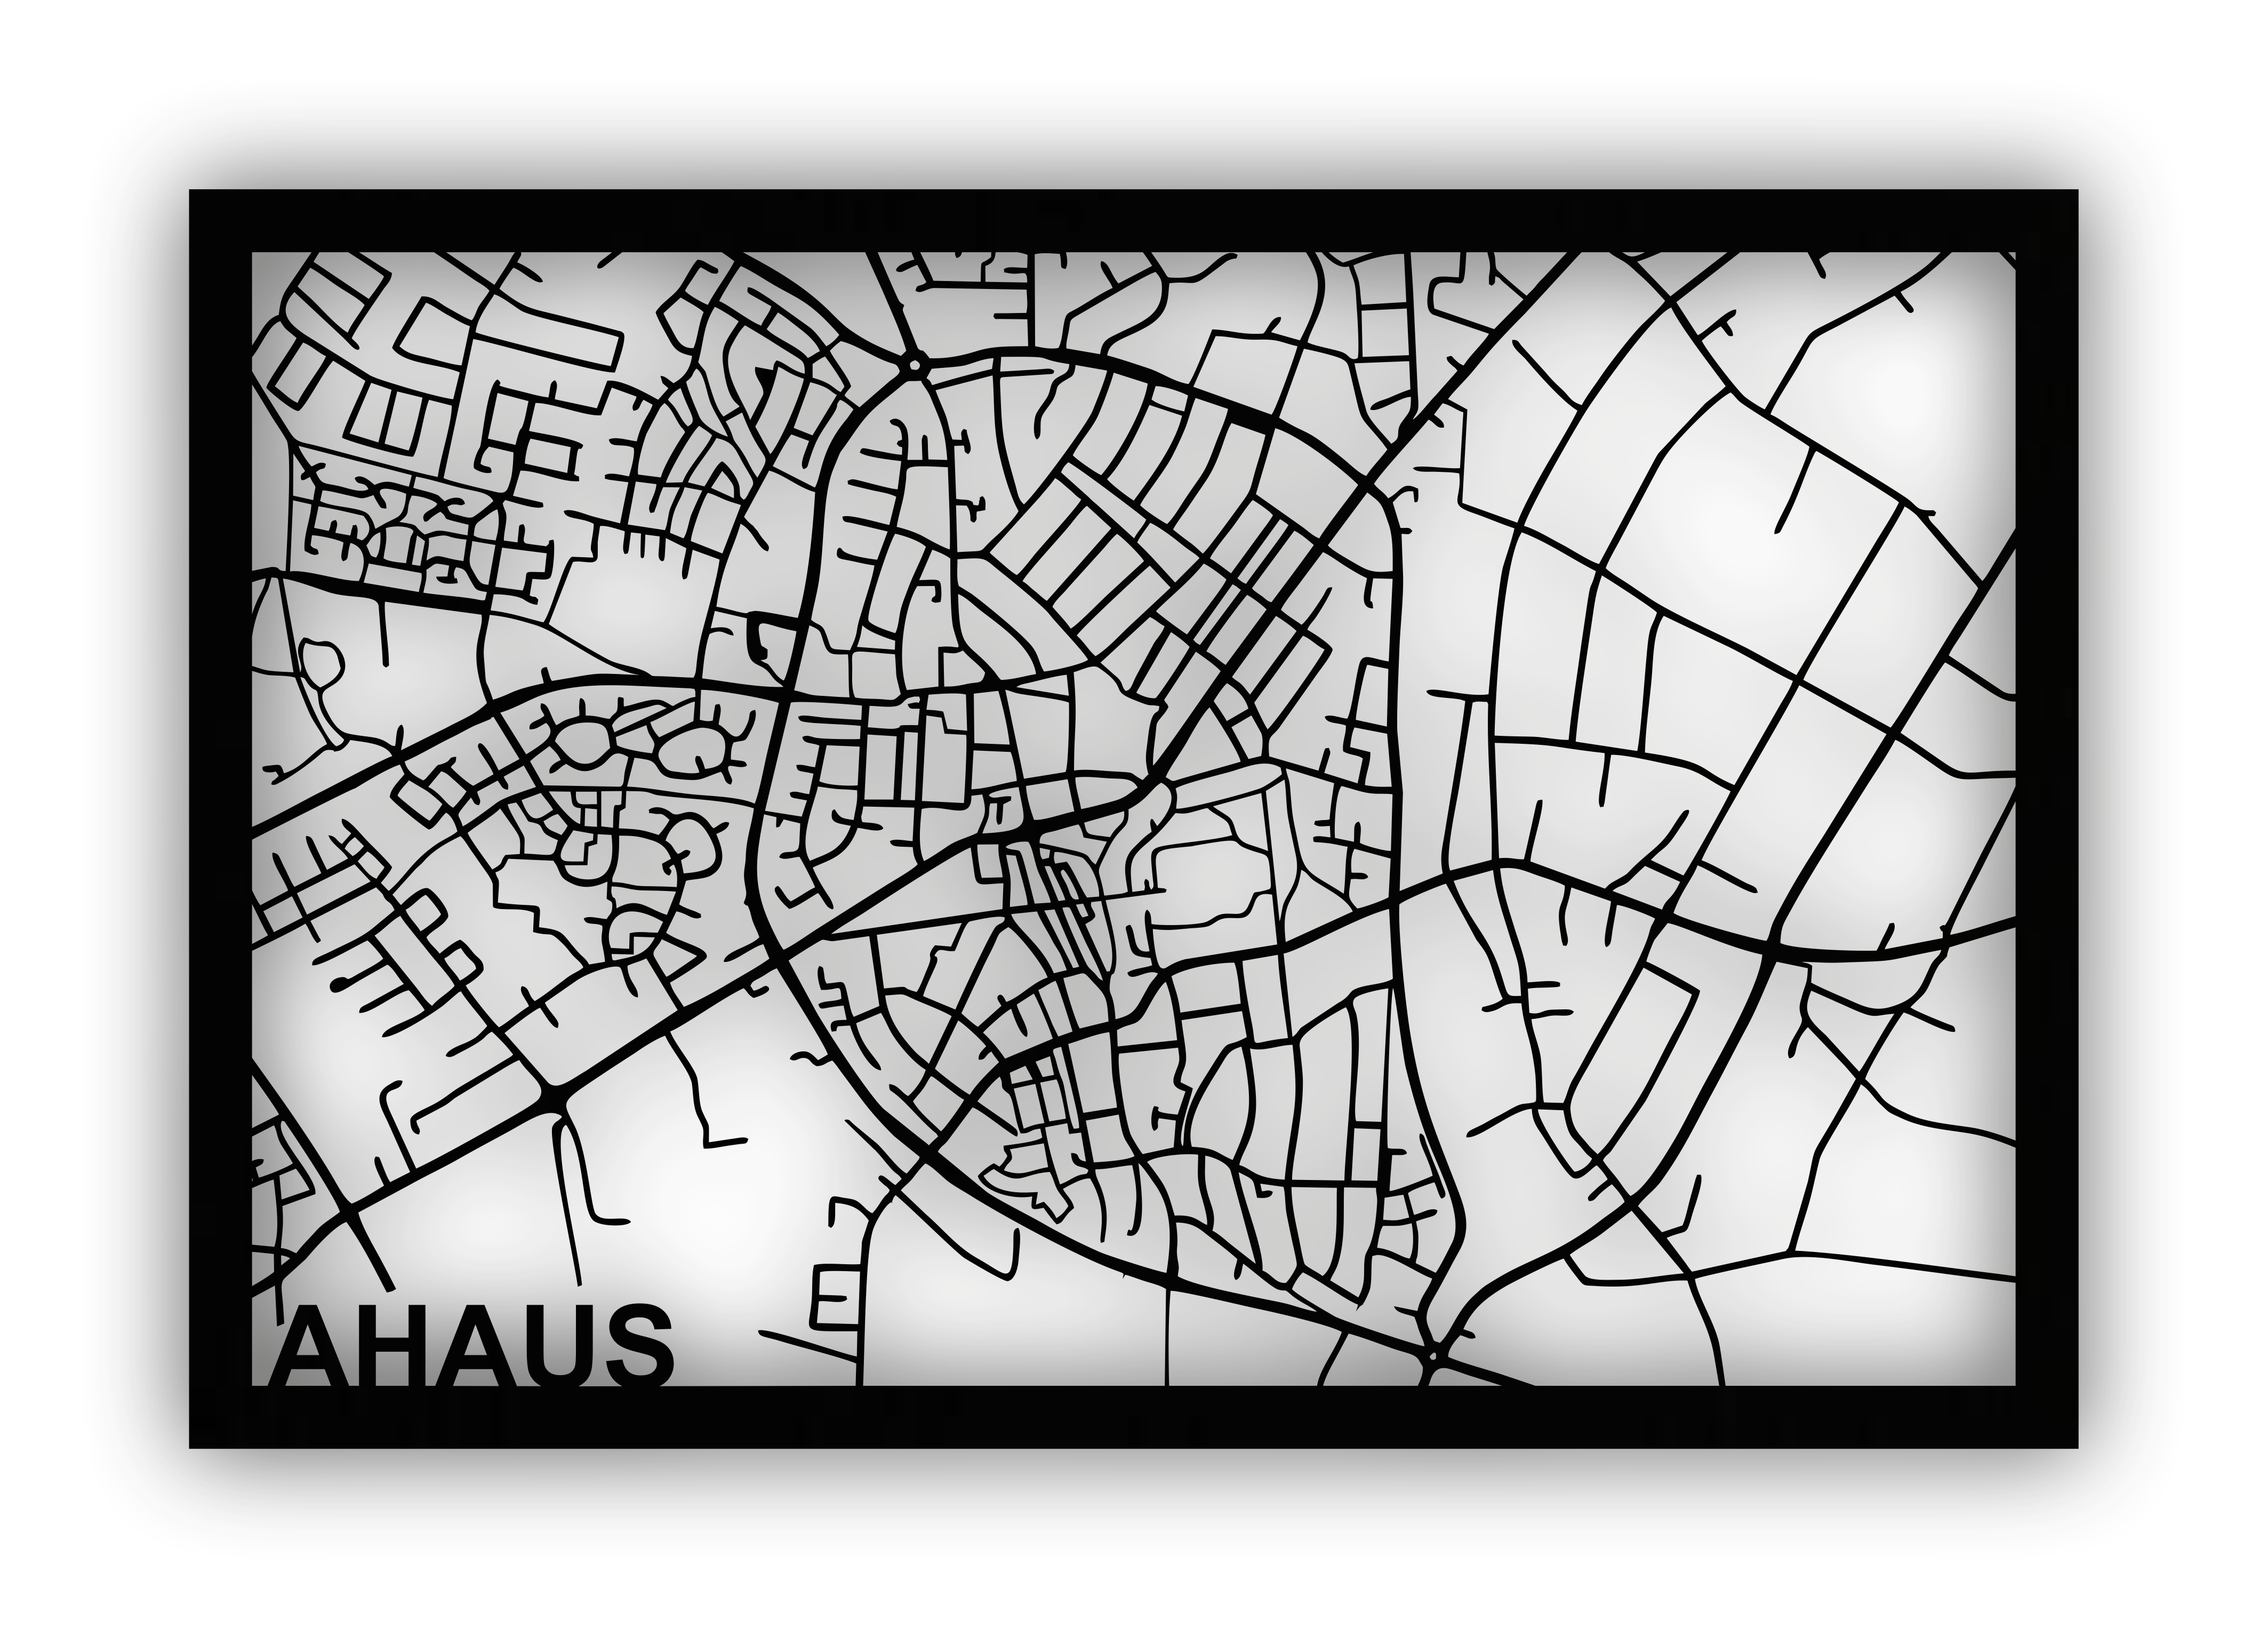 Stadtplan Ahaus - selbstklebend